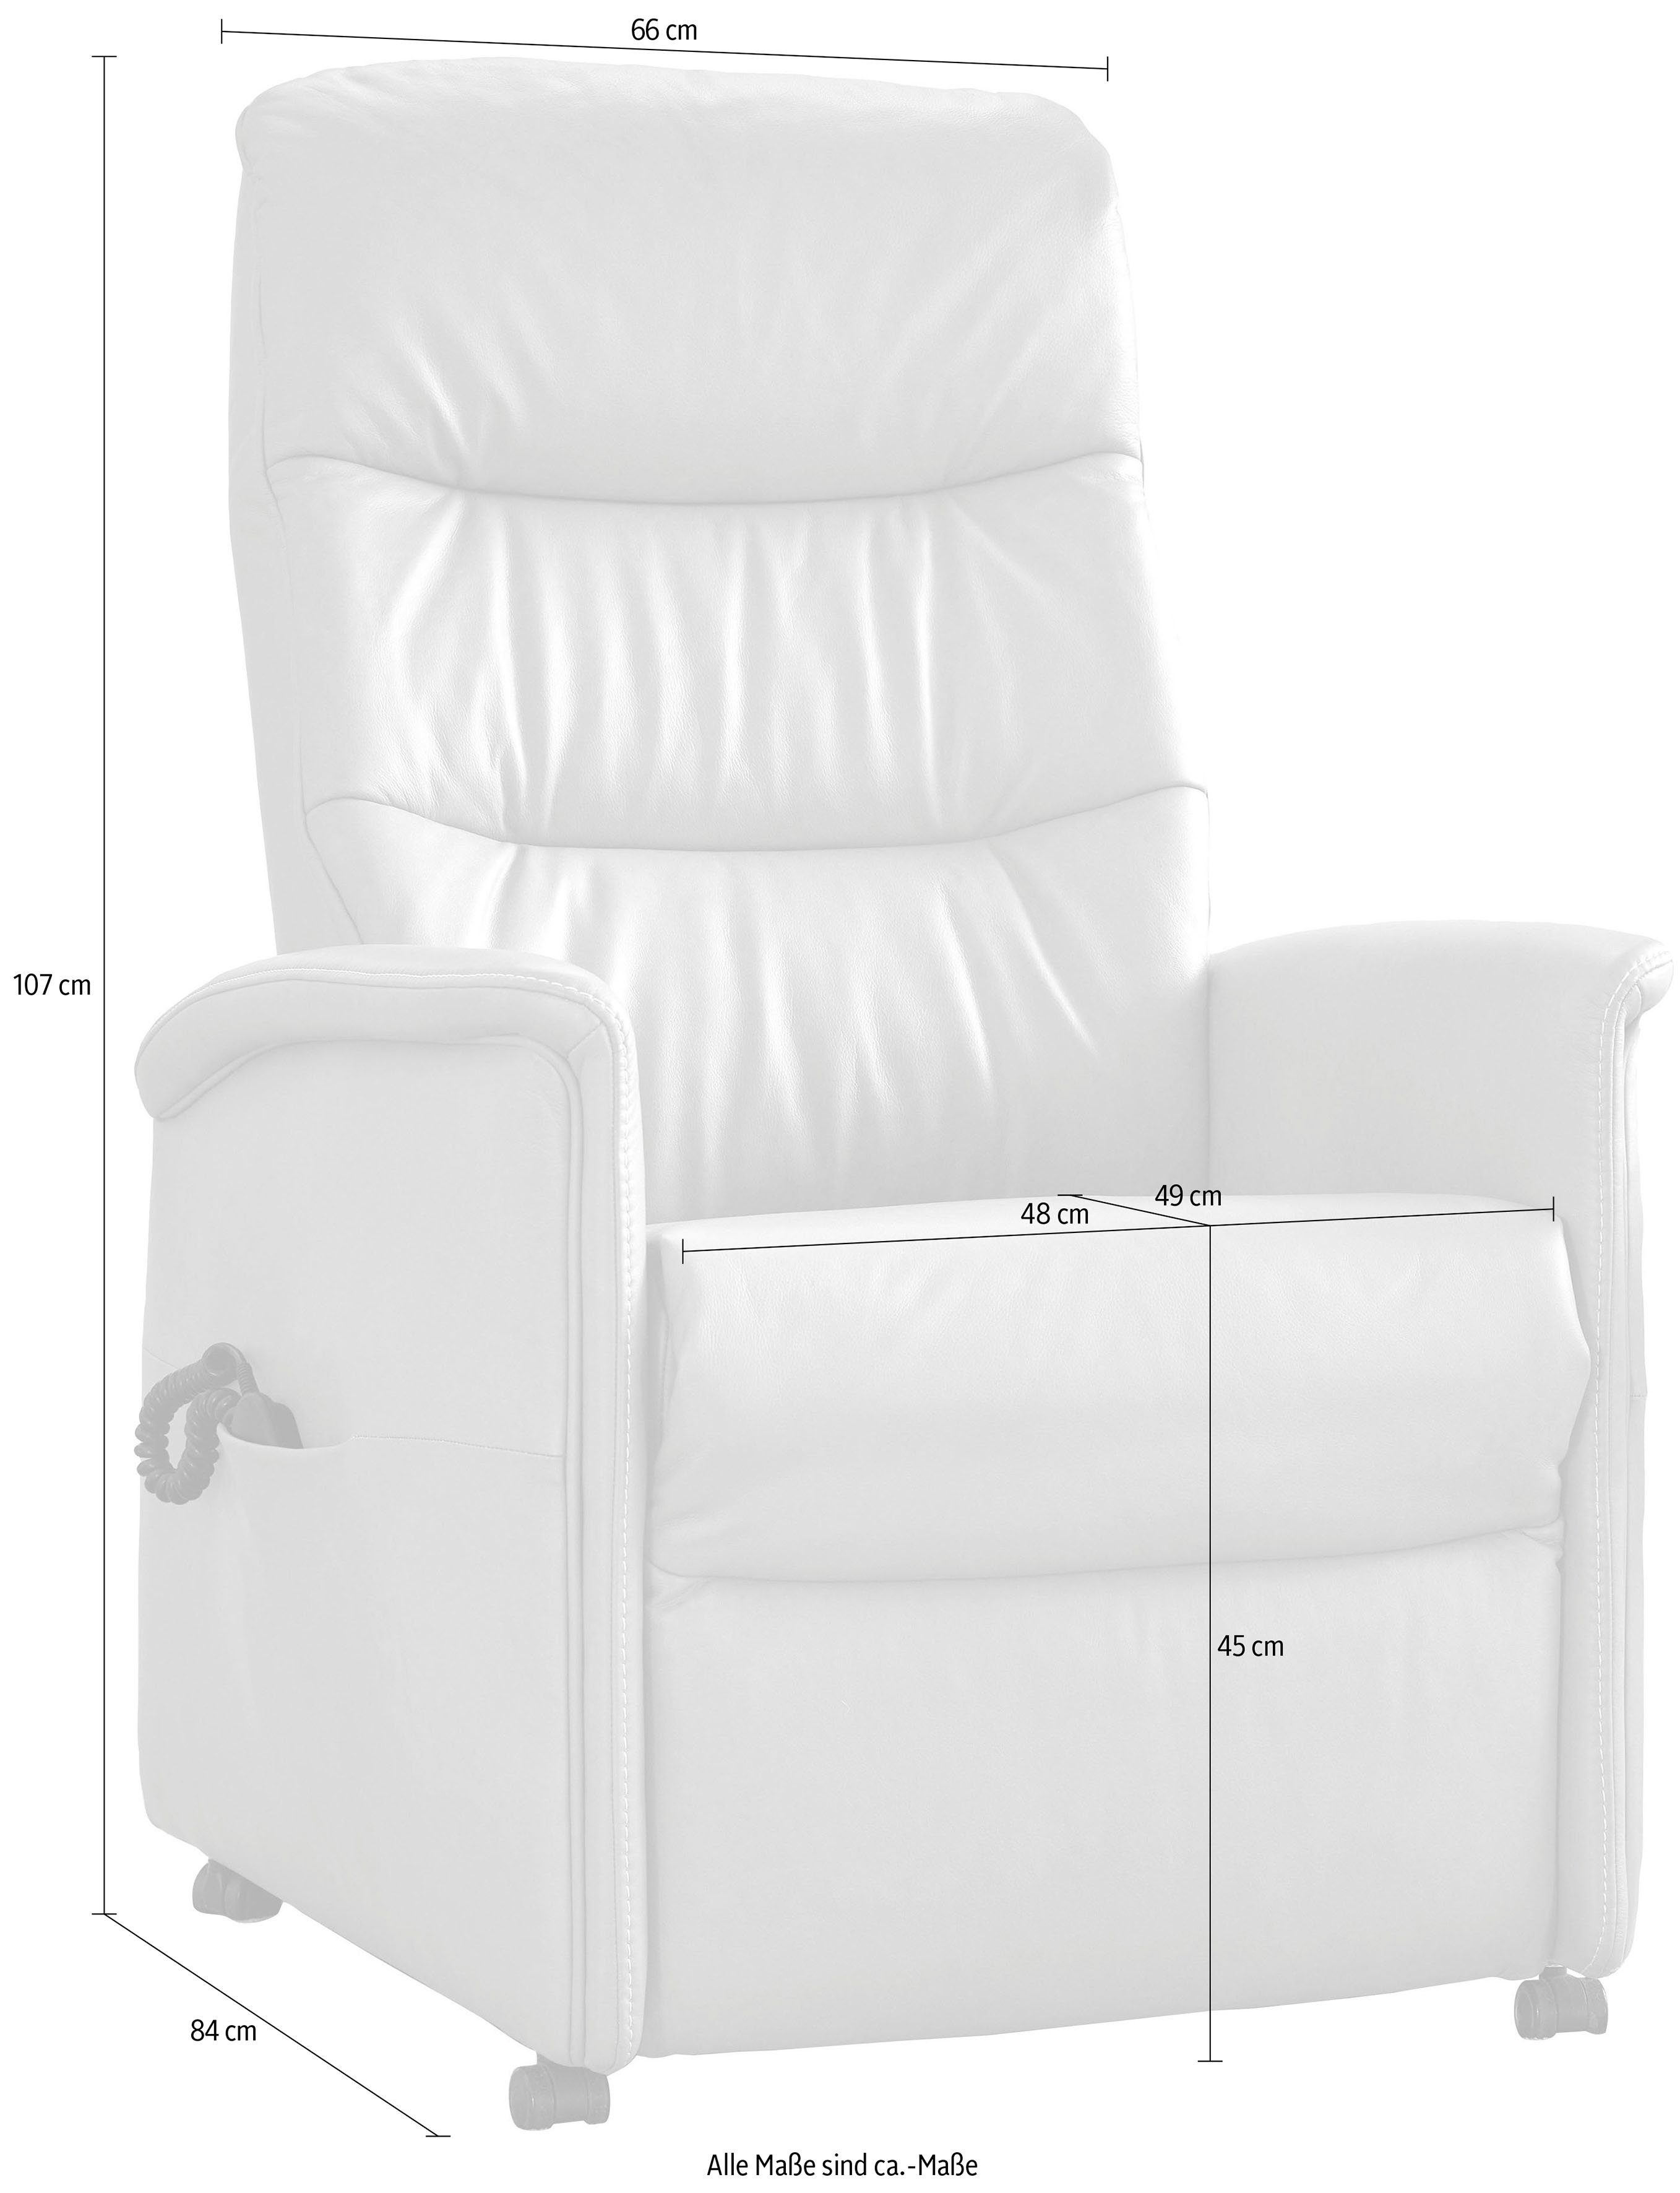 Relaxsessel himolla Sitzhöhen, 9051, 3 manuell oder himolla elektrisch verstellbar, Aufstehhilfe in